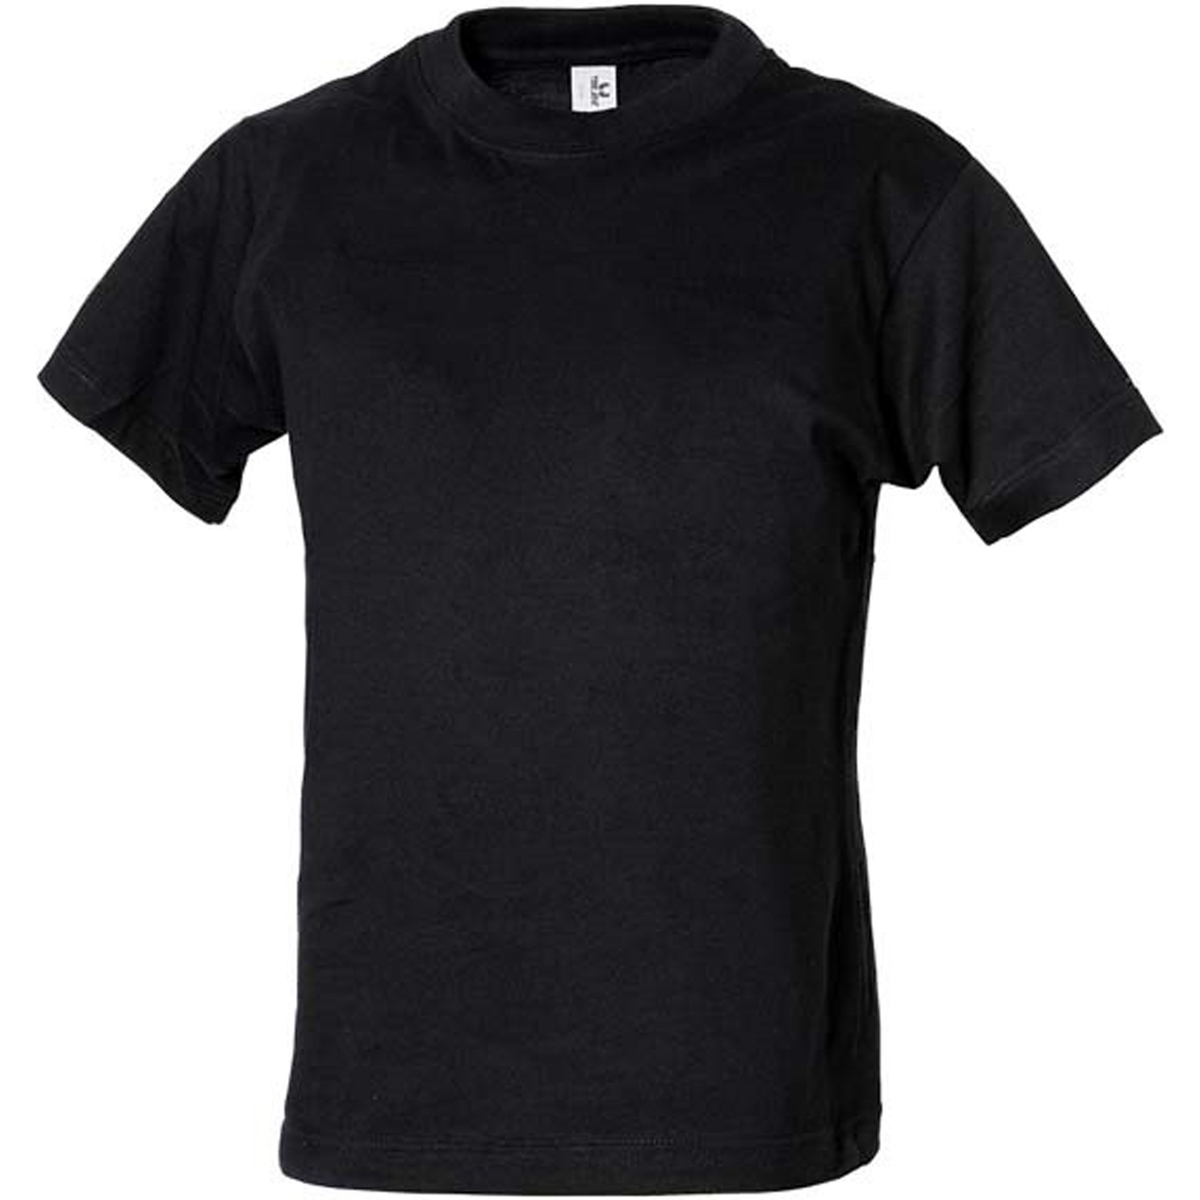 textil Niños Camisetas manga larga Tee Jays Power Negro